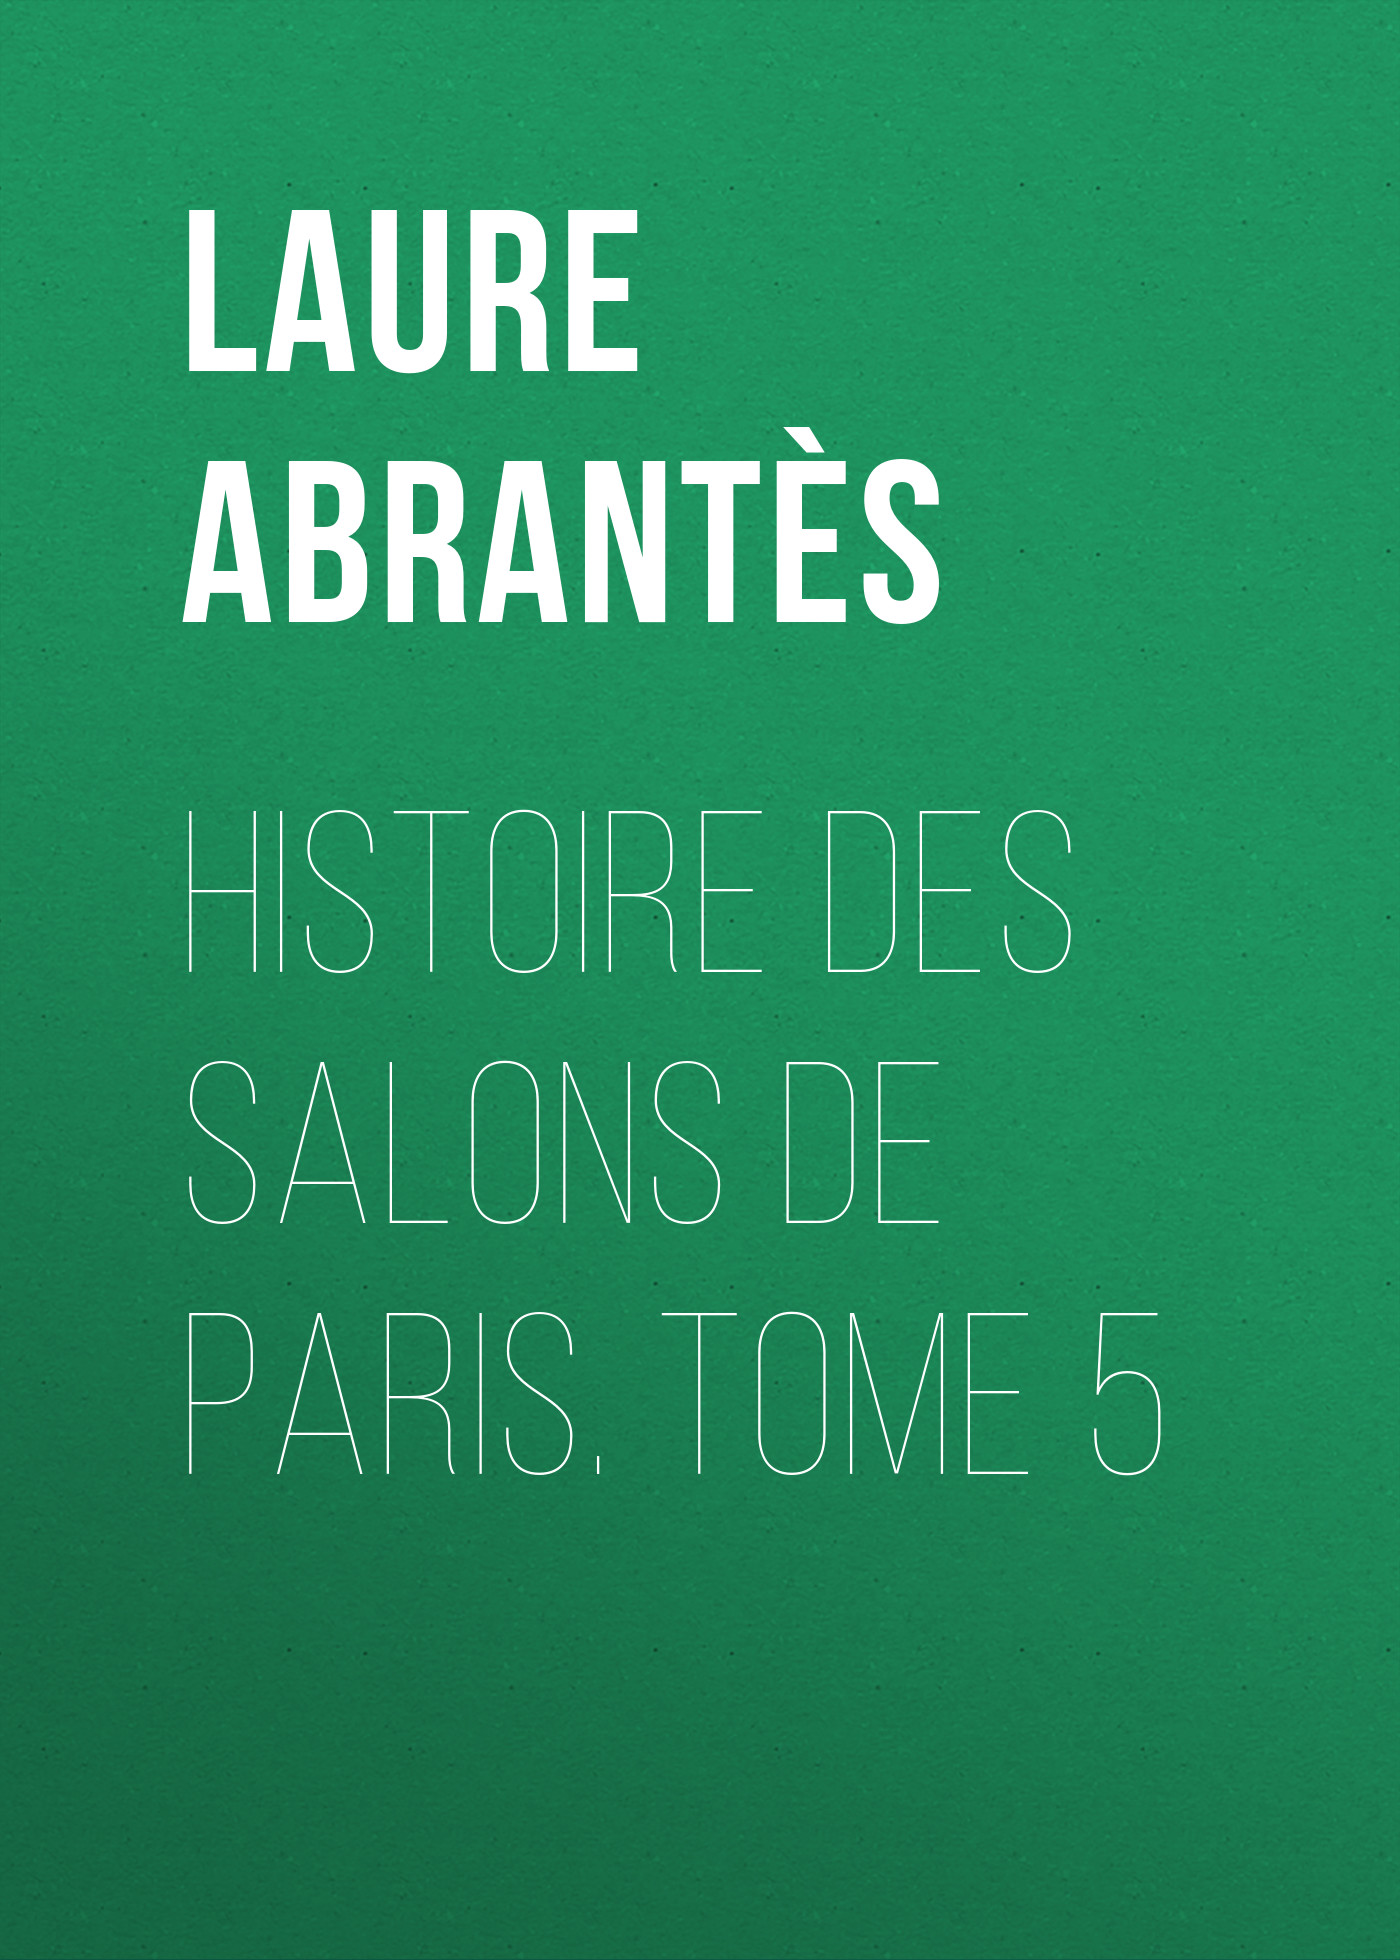 Книга Histoire des salons de Paris. Tome 5 из серии , созданная Laure Abrantès, может относится к жанру Зарубежная старинная литература, Зарубежная классика. Стоимость электронной книги Histoire des salons de Paris. Tome 5 с идентификатором 24166148 составляет 5.99 руб.